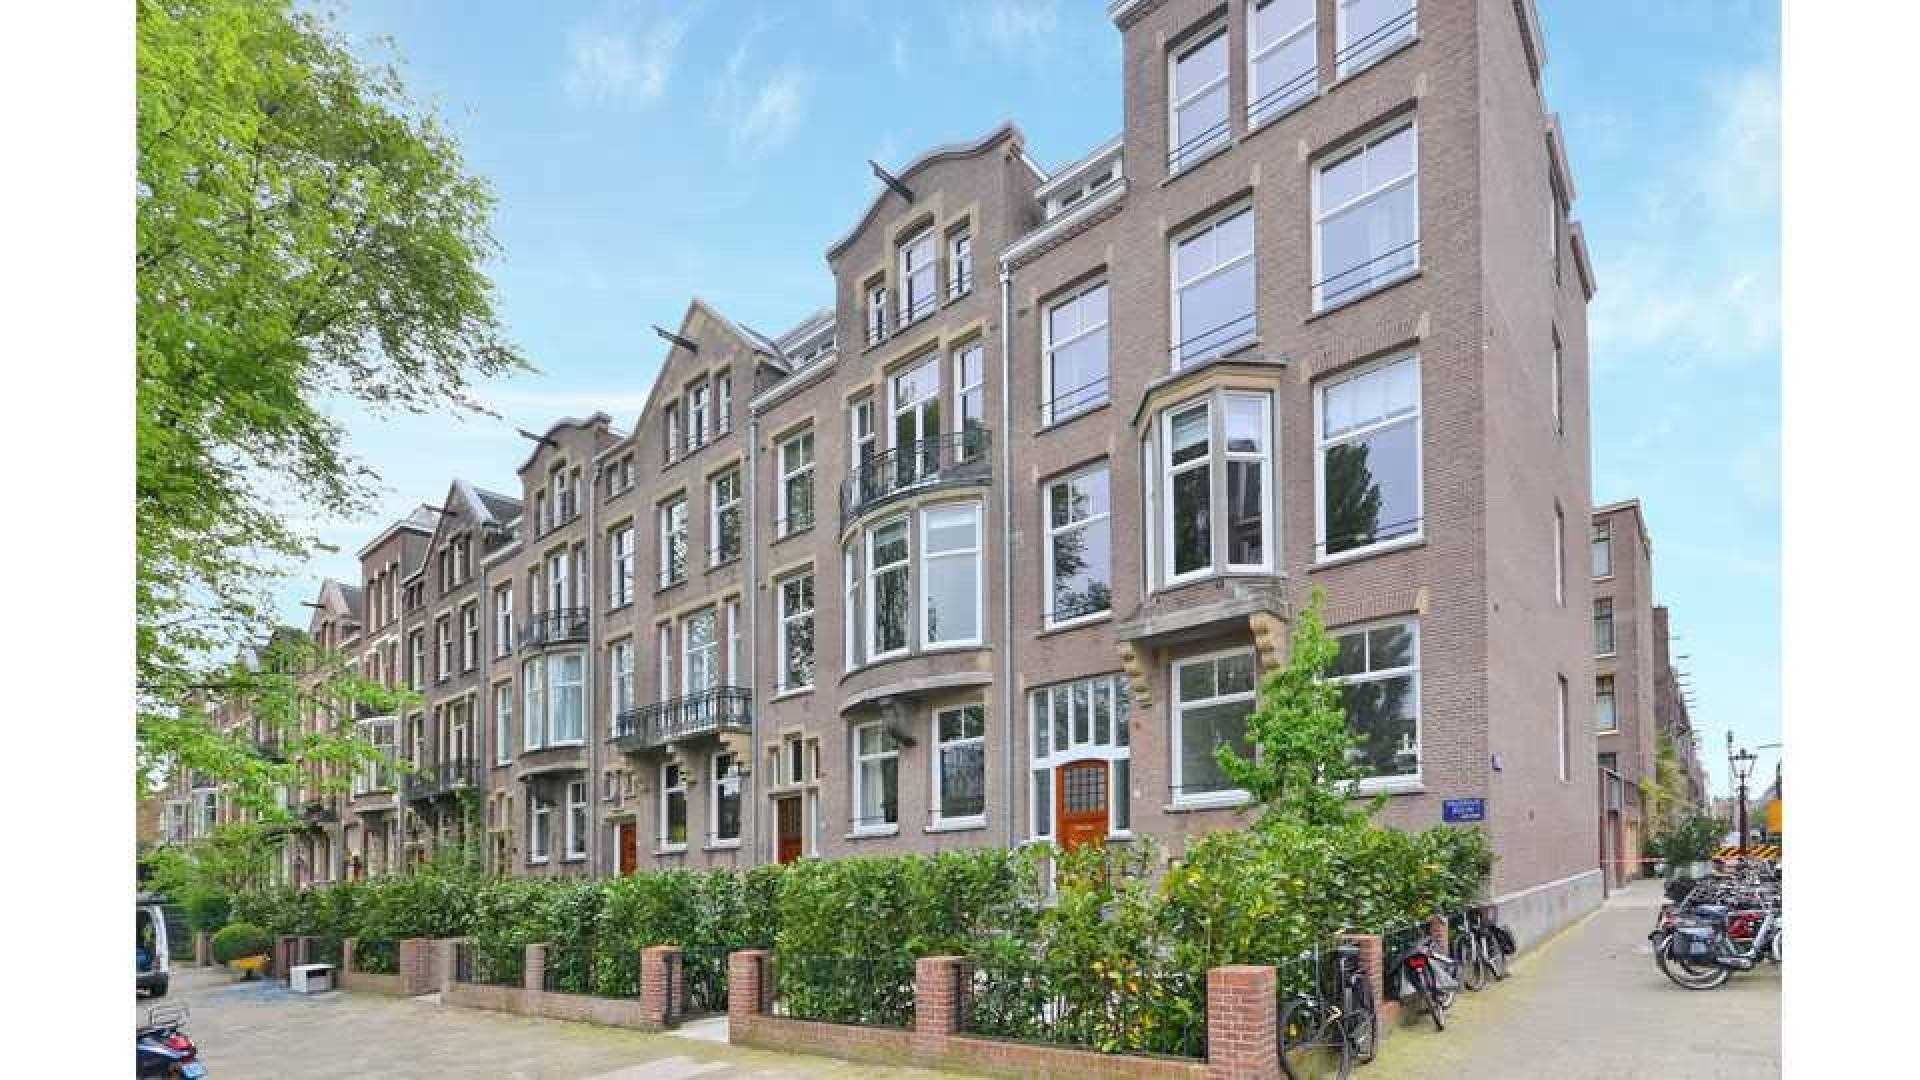 Hart van Nederland presentatrice Gallyon van Vessem verkoopt haar Amsterdamse pand ton euro onder de vraagprijs. Zie foto's